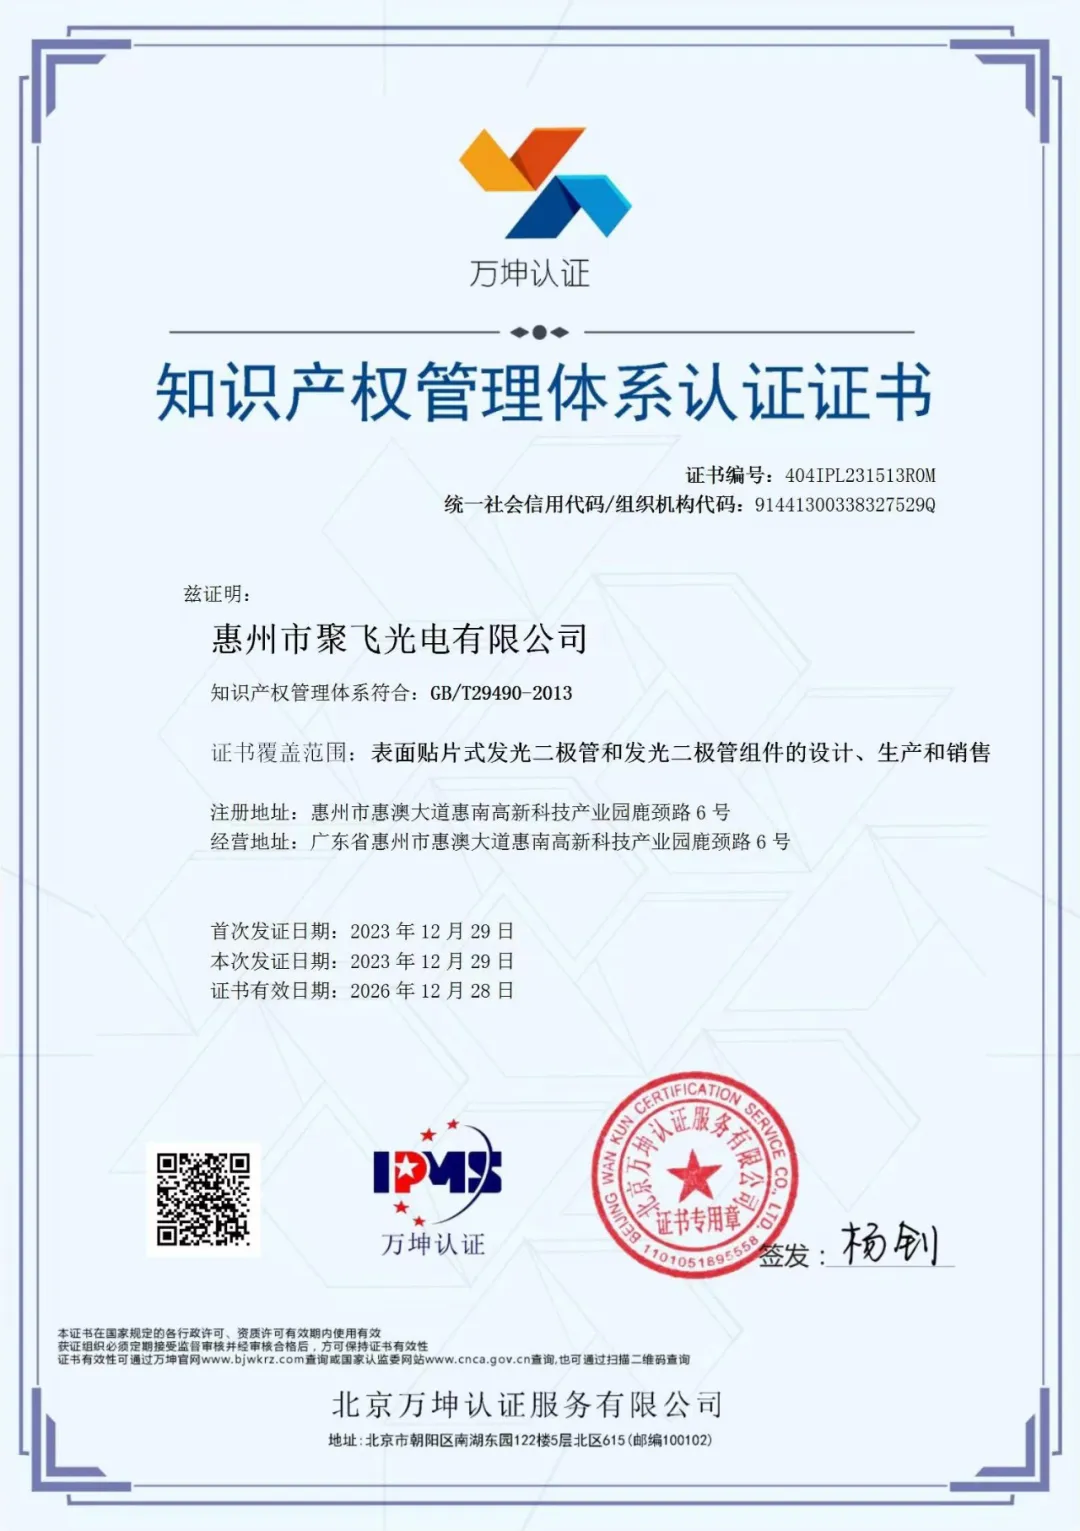 惠州8090电玩城森林舞会通过企业知识产权管理规范认证